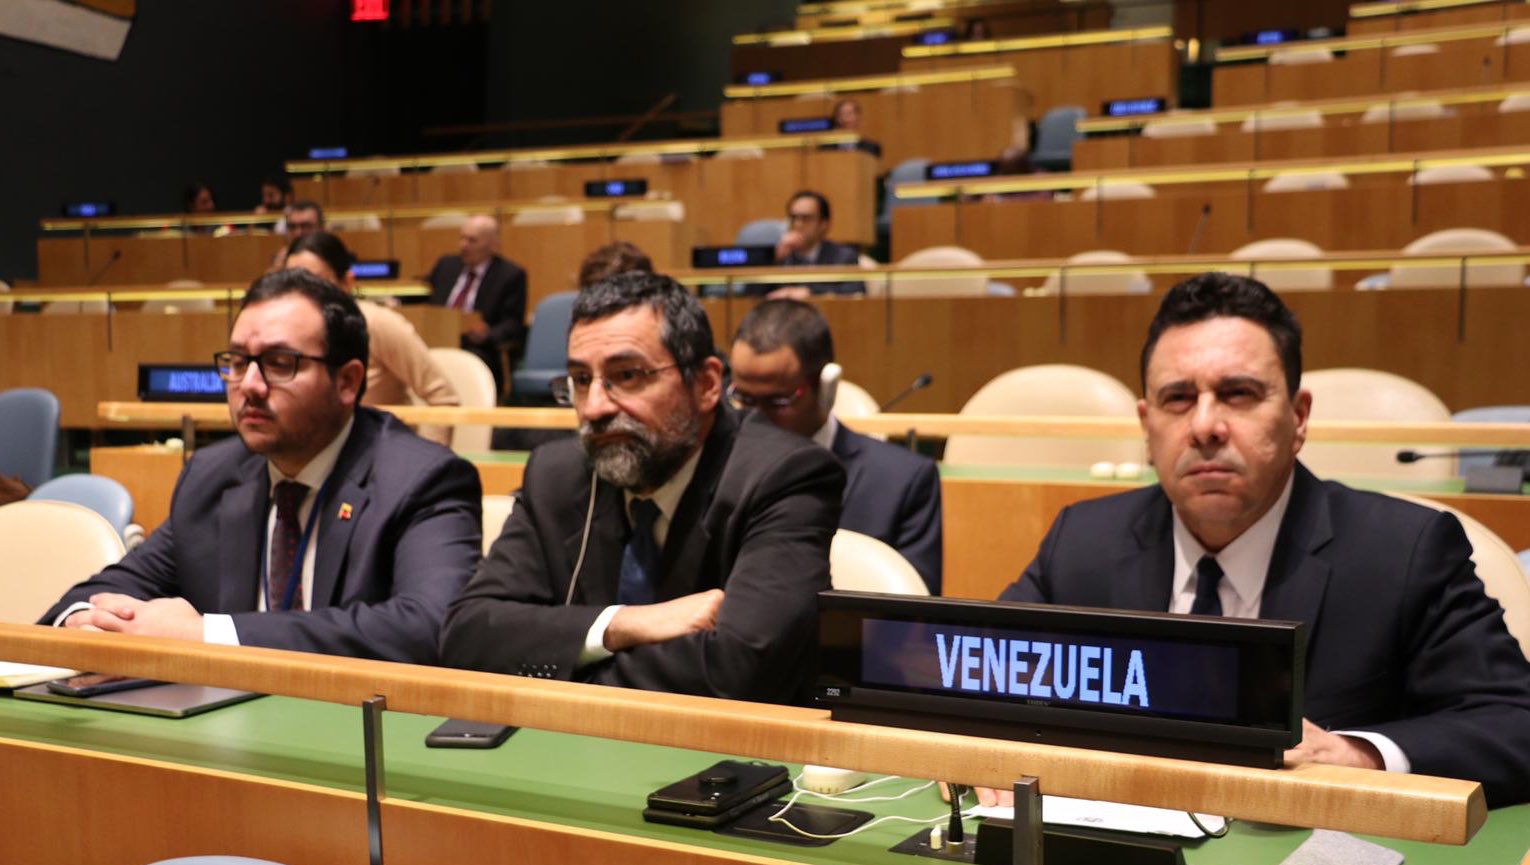 El diplomático venezolano ratificó la postura de la ONU, pese a los intentos desestabilizadores de potencias extranjeras.